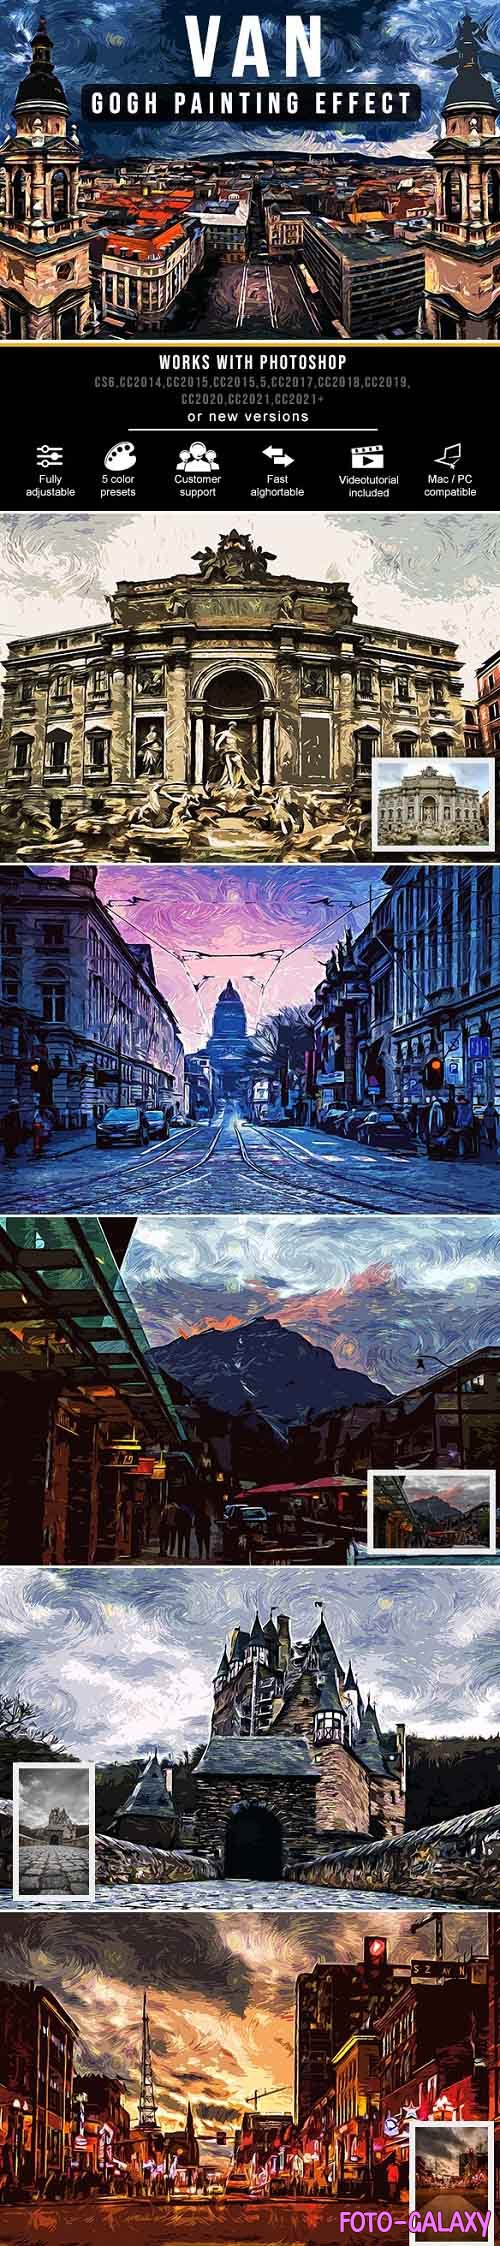 Van Gogh Painting Effect - 33940443